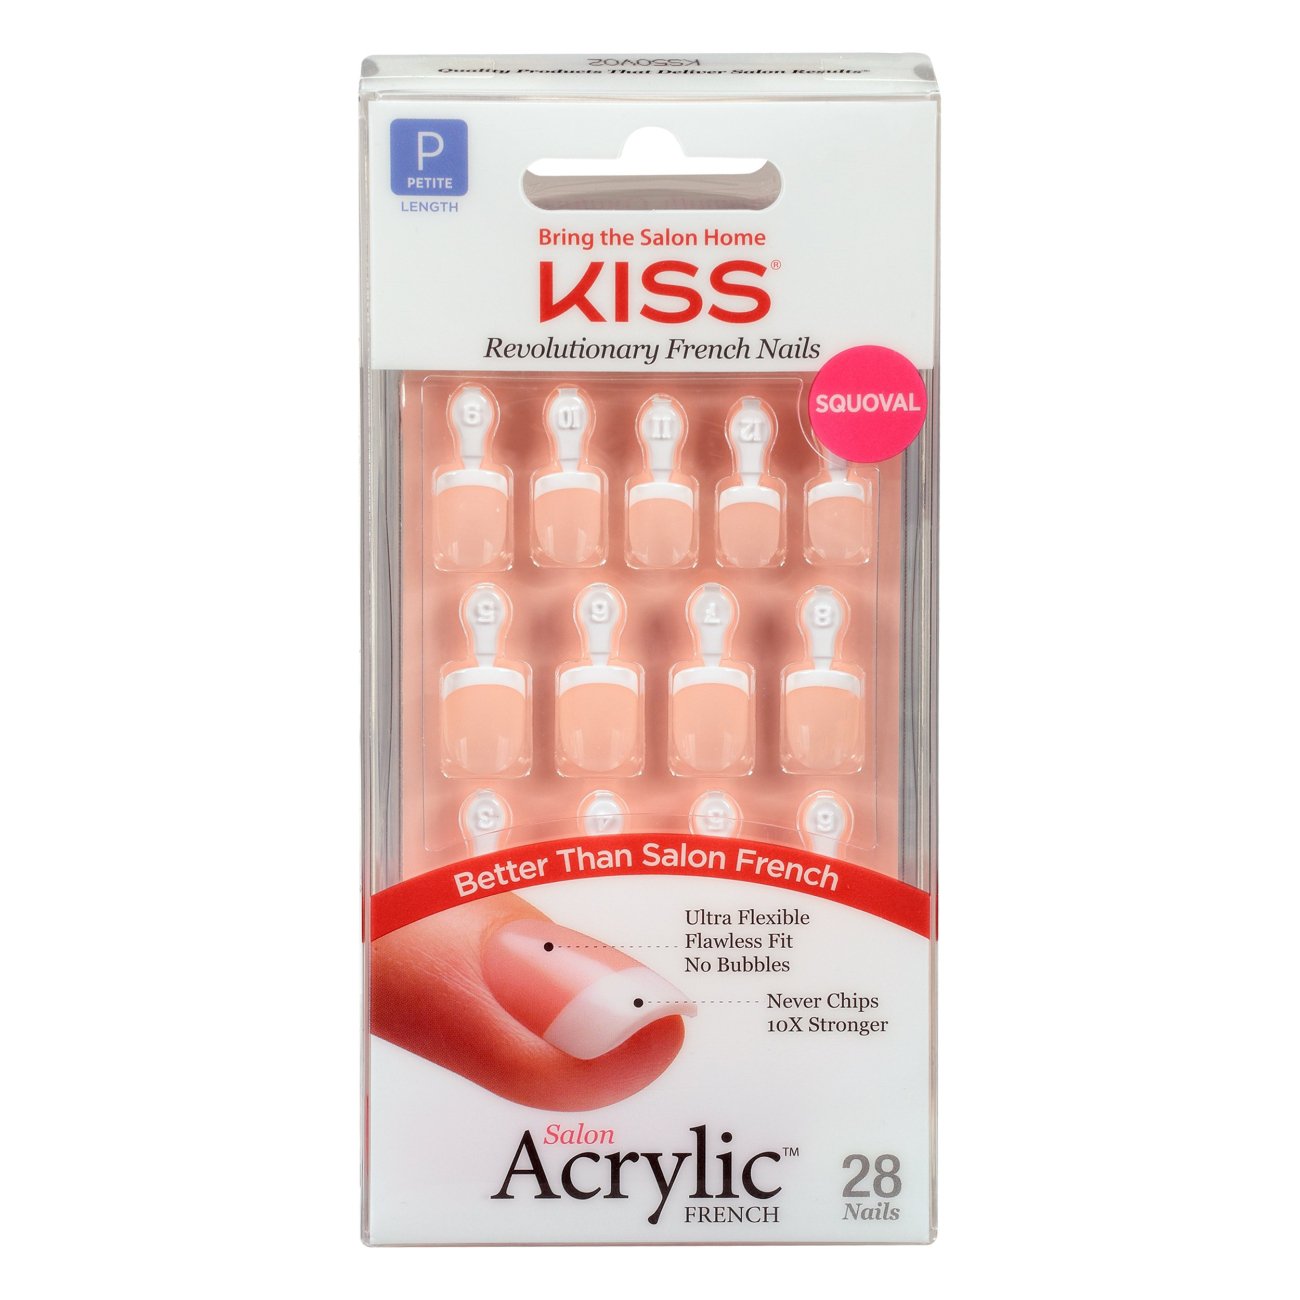 Kiss Acrylic Nude French Nails Natural Look Tips Medium 